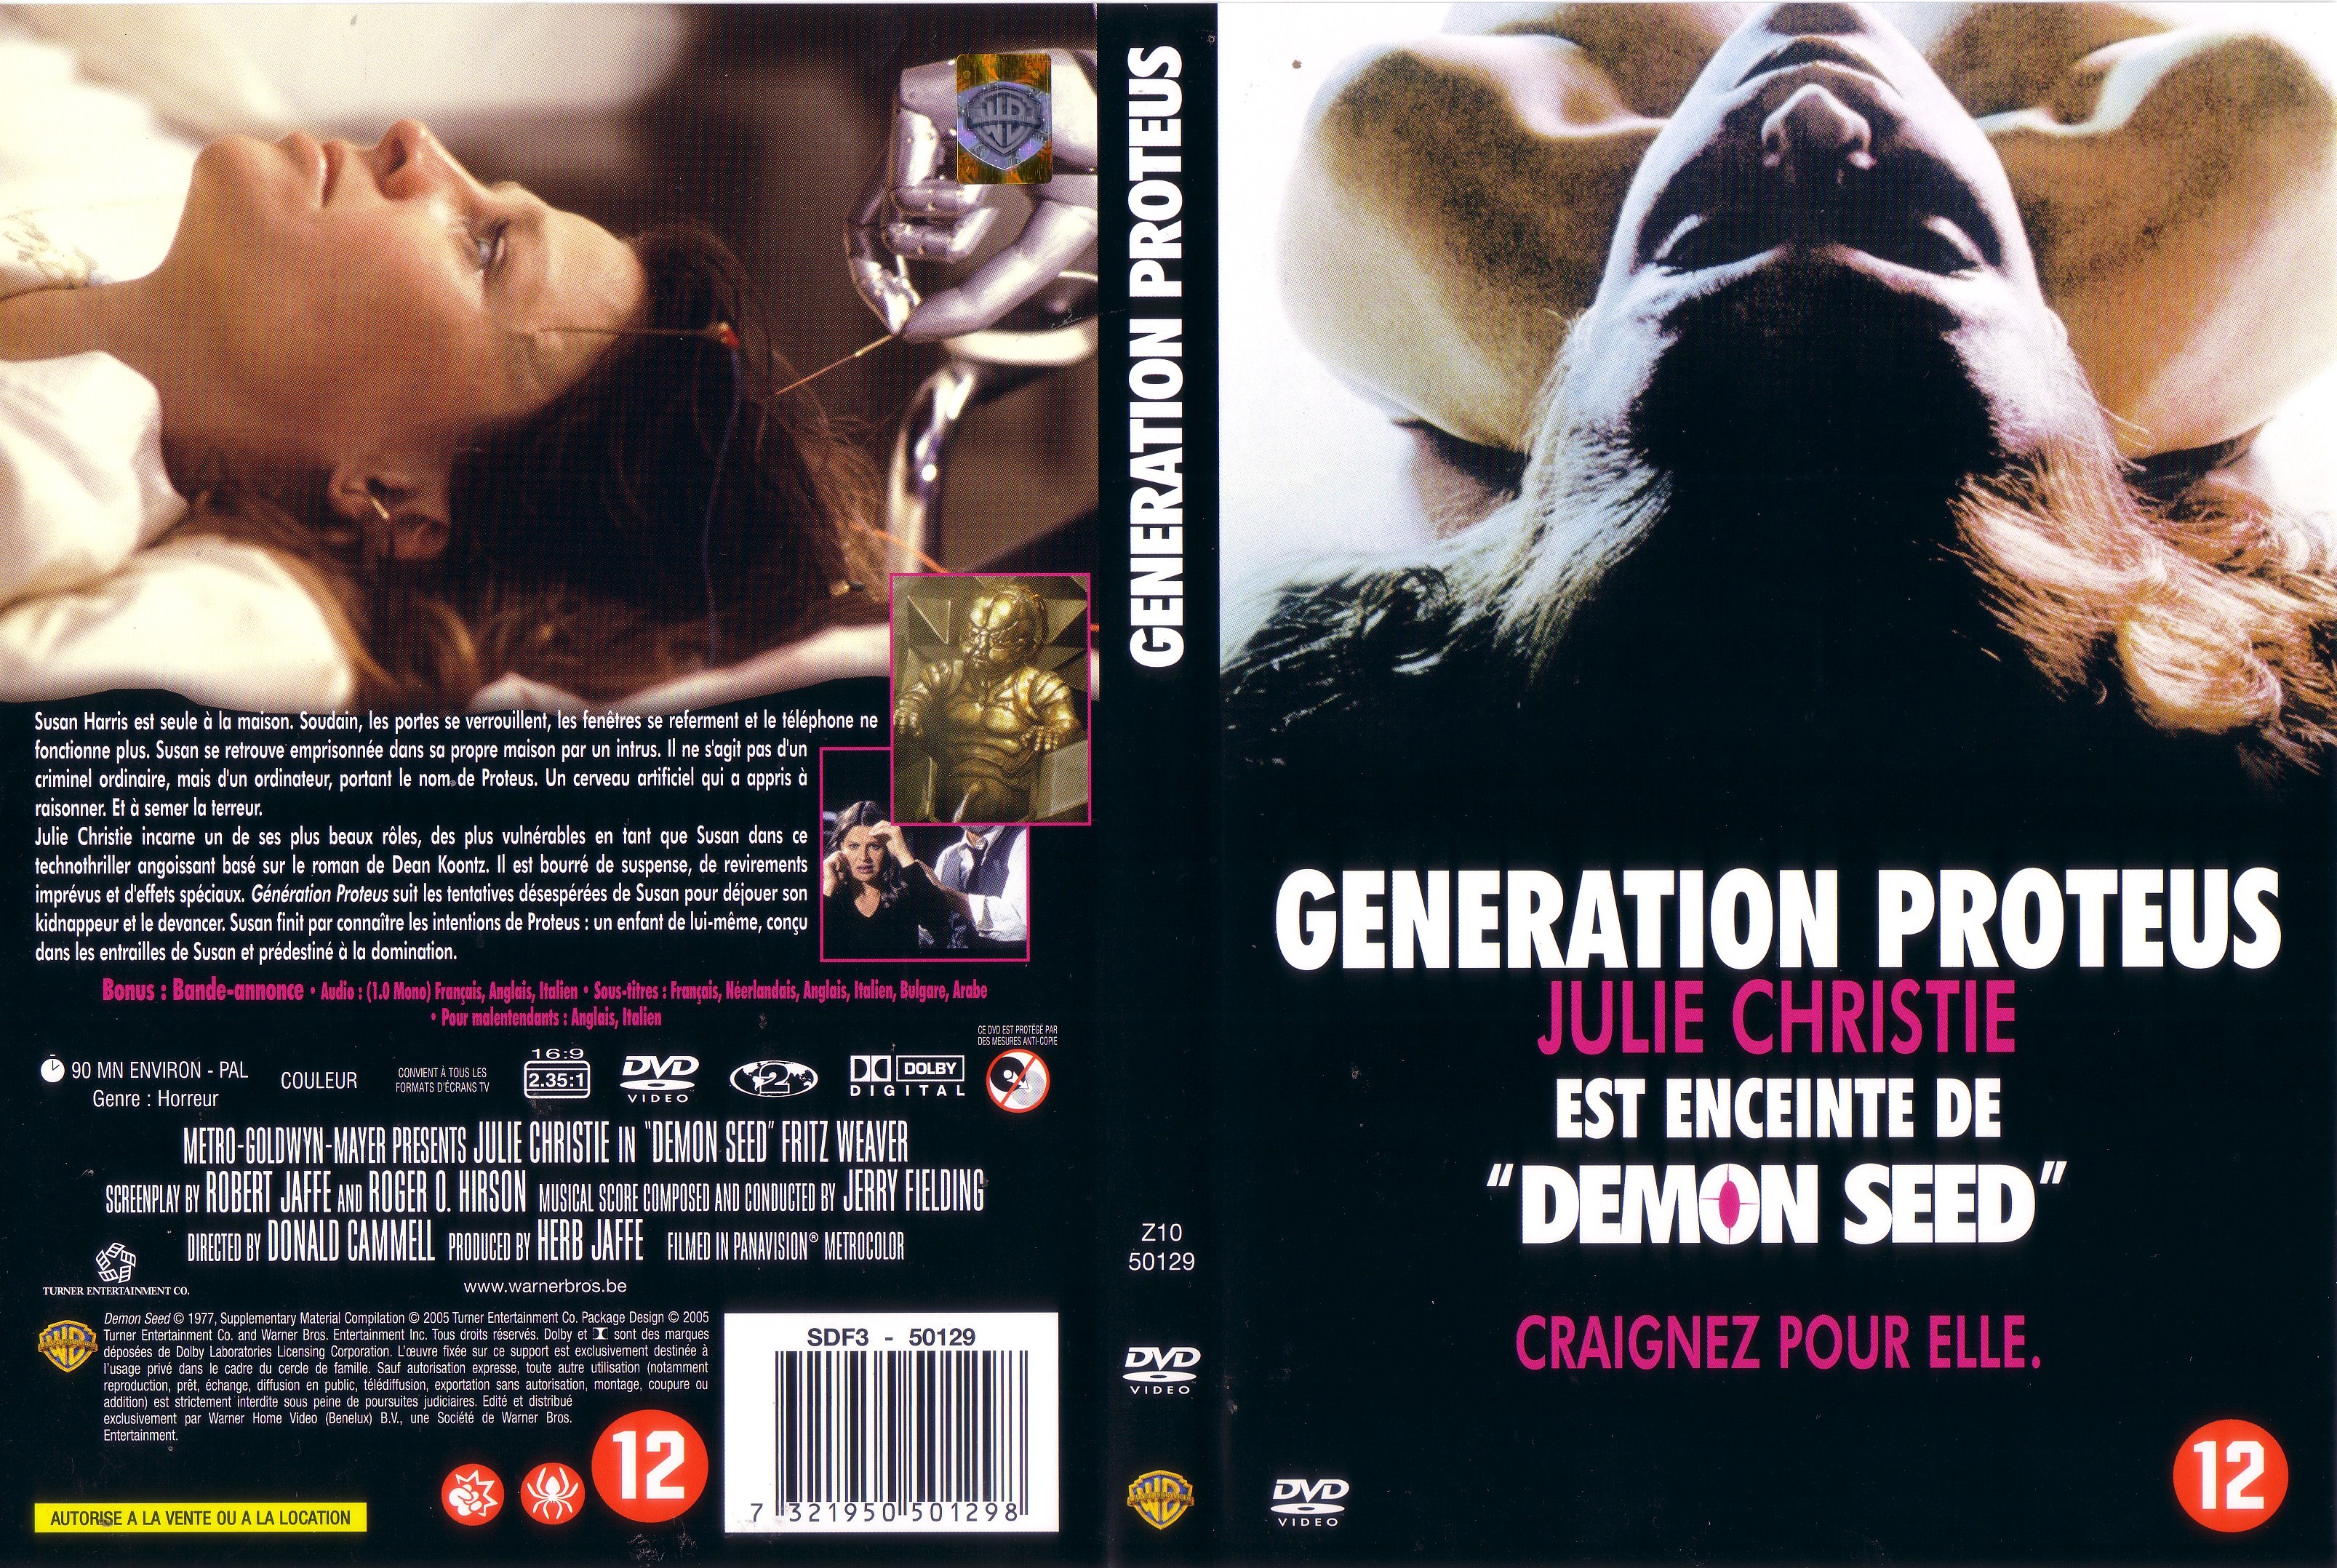 Jaquette DVD Generation proteus